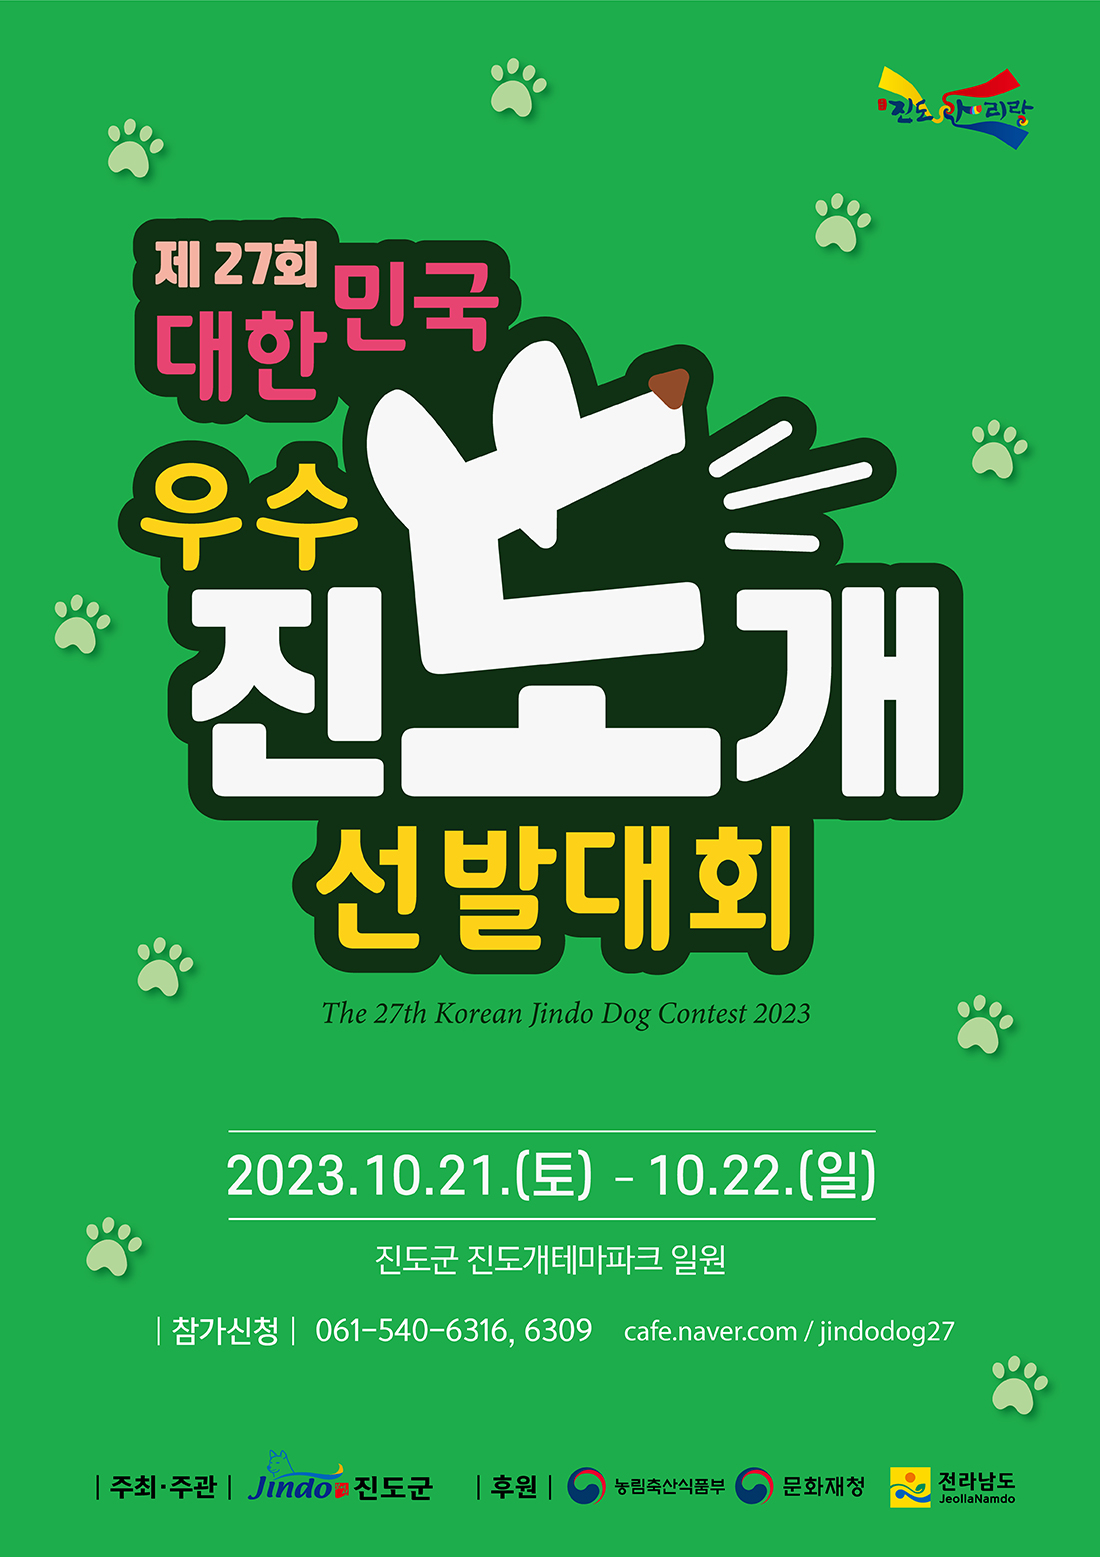 제 27회 대한민국 우수 진도개 선발대회 The 27th Korean Jindo Dog Contest 2023 2023.10.21.(토) - 10.22.(일) 진도군 진도개테마파크 일원 참가신청 061-540-6316, 6309 cafe.naver.com/jindodog27 주최·주관 Jindo 진도군 후원 농림축산식품부, 문화재청, 전라남도 JeollaNamdo